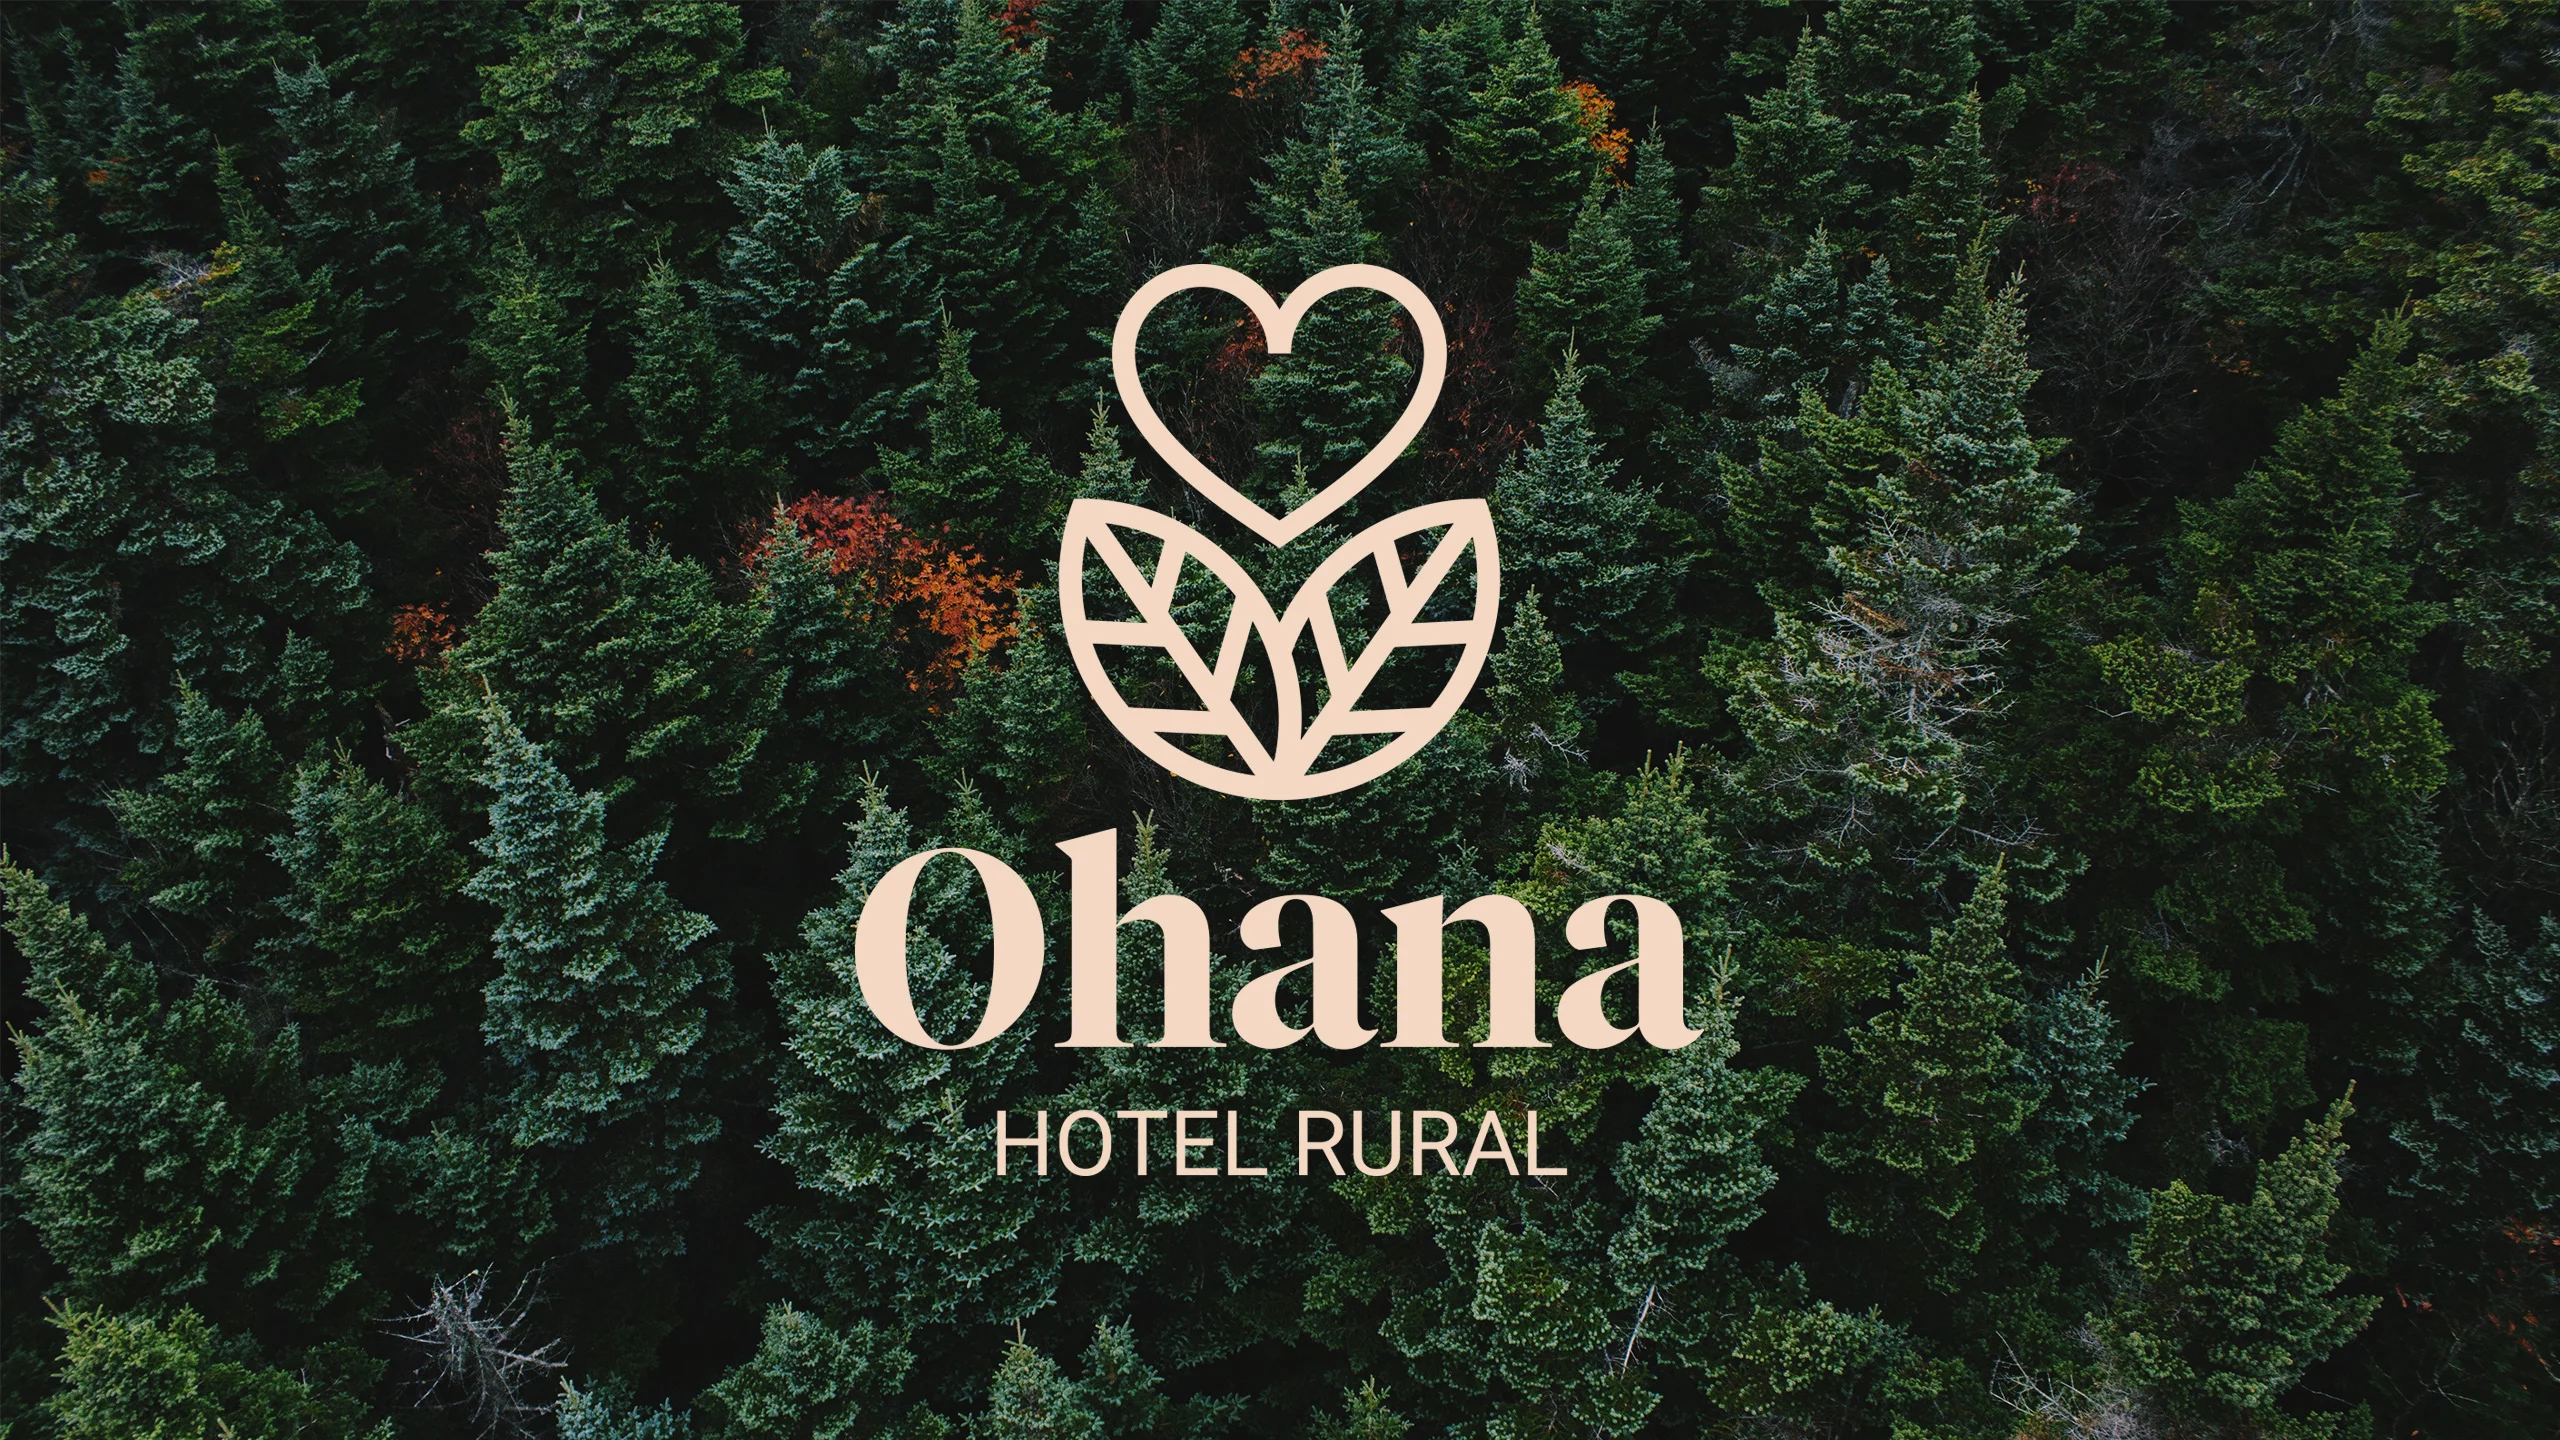 Ohana hotel rural